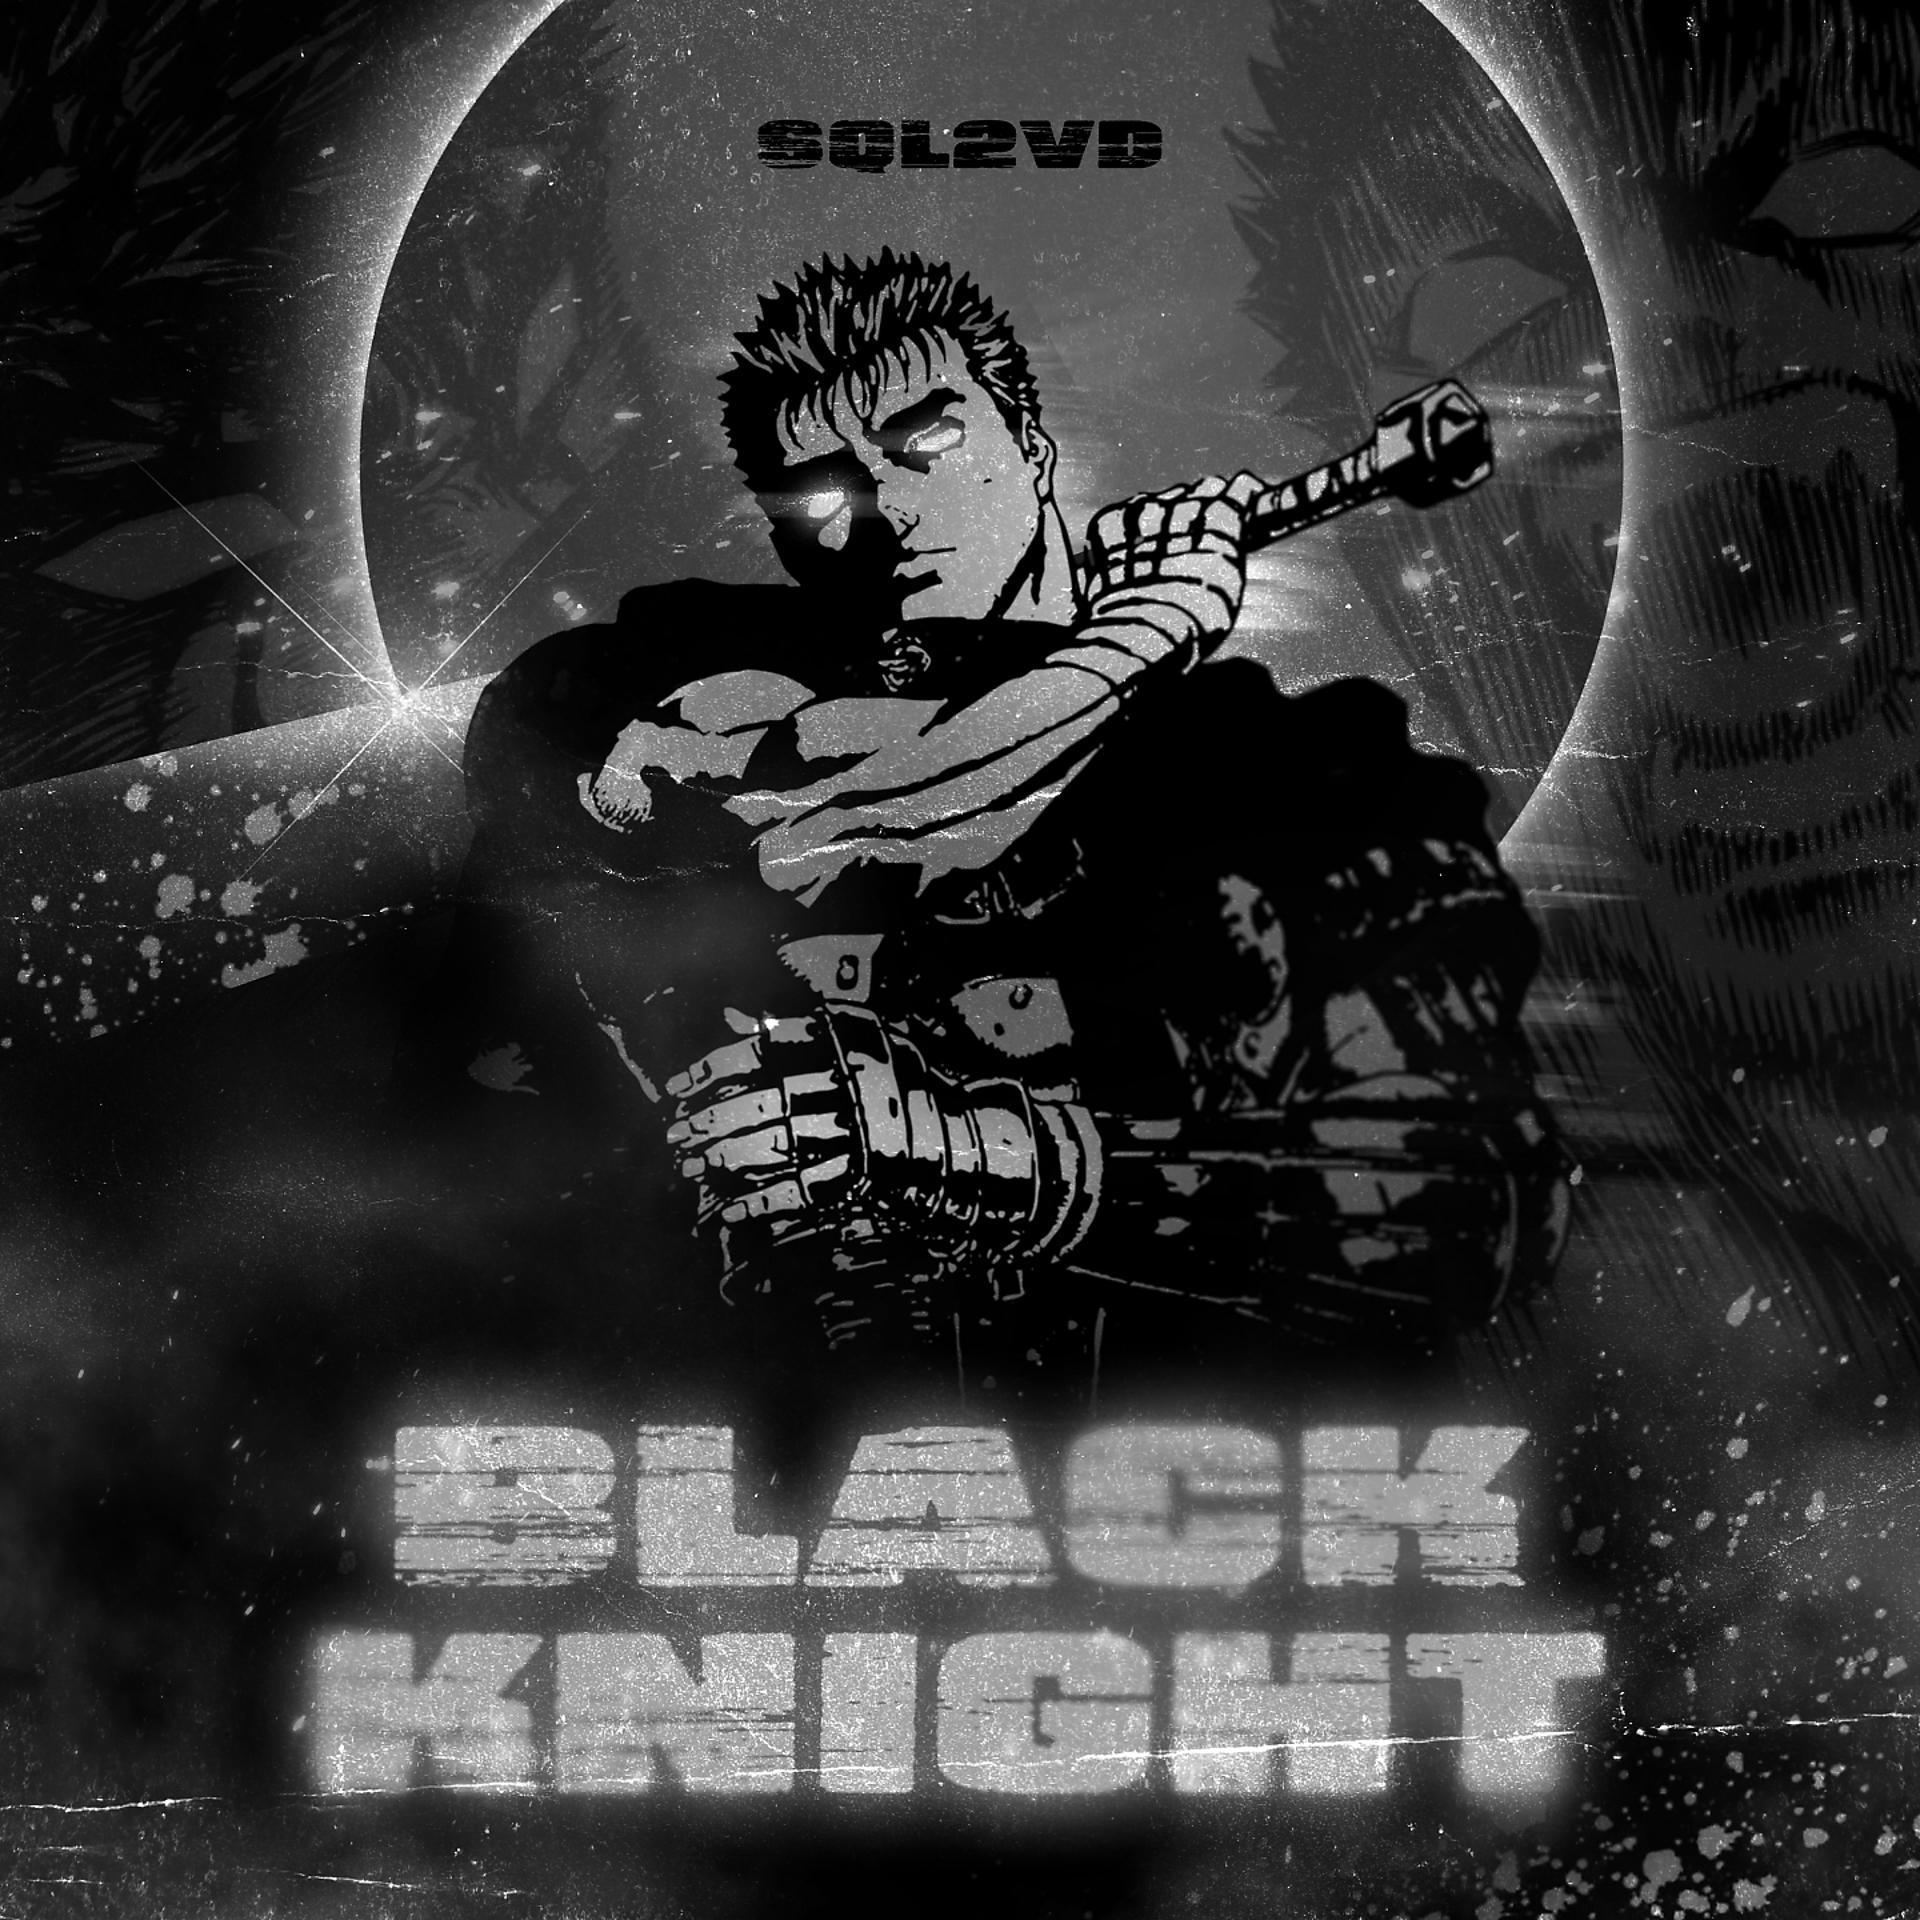 Постер альбома Black Knight